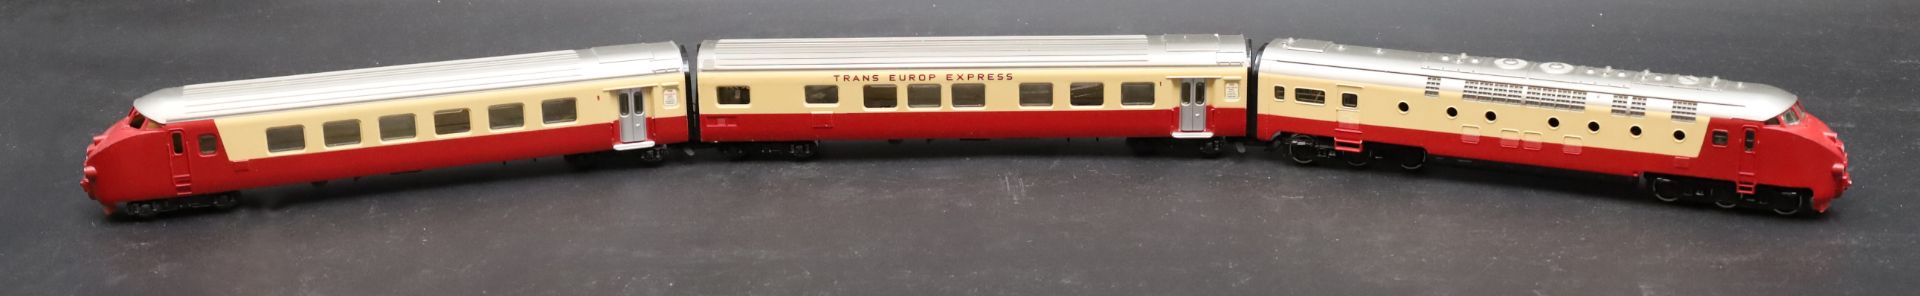 MÄRKLIN Spur H0. Trans Europ Express. Modelleisenbahn.